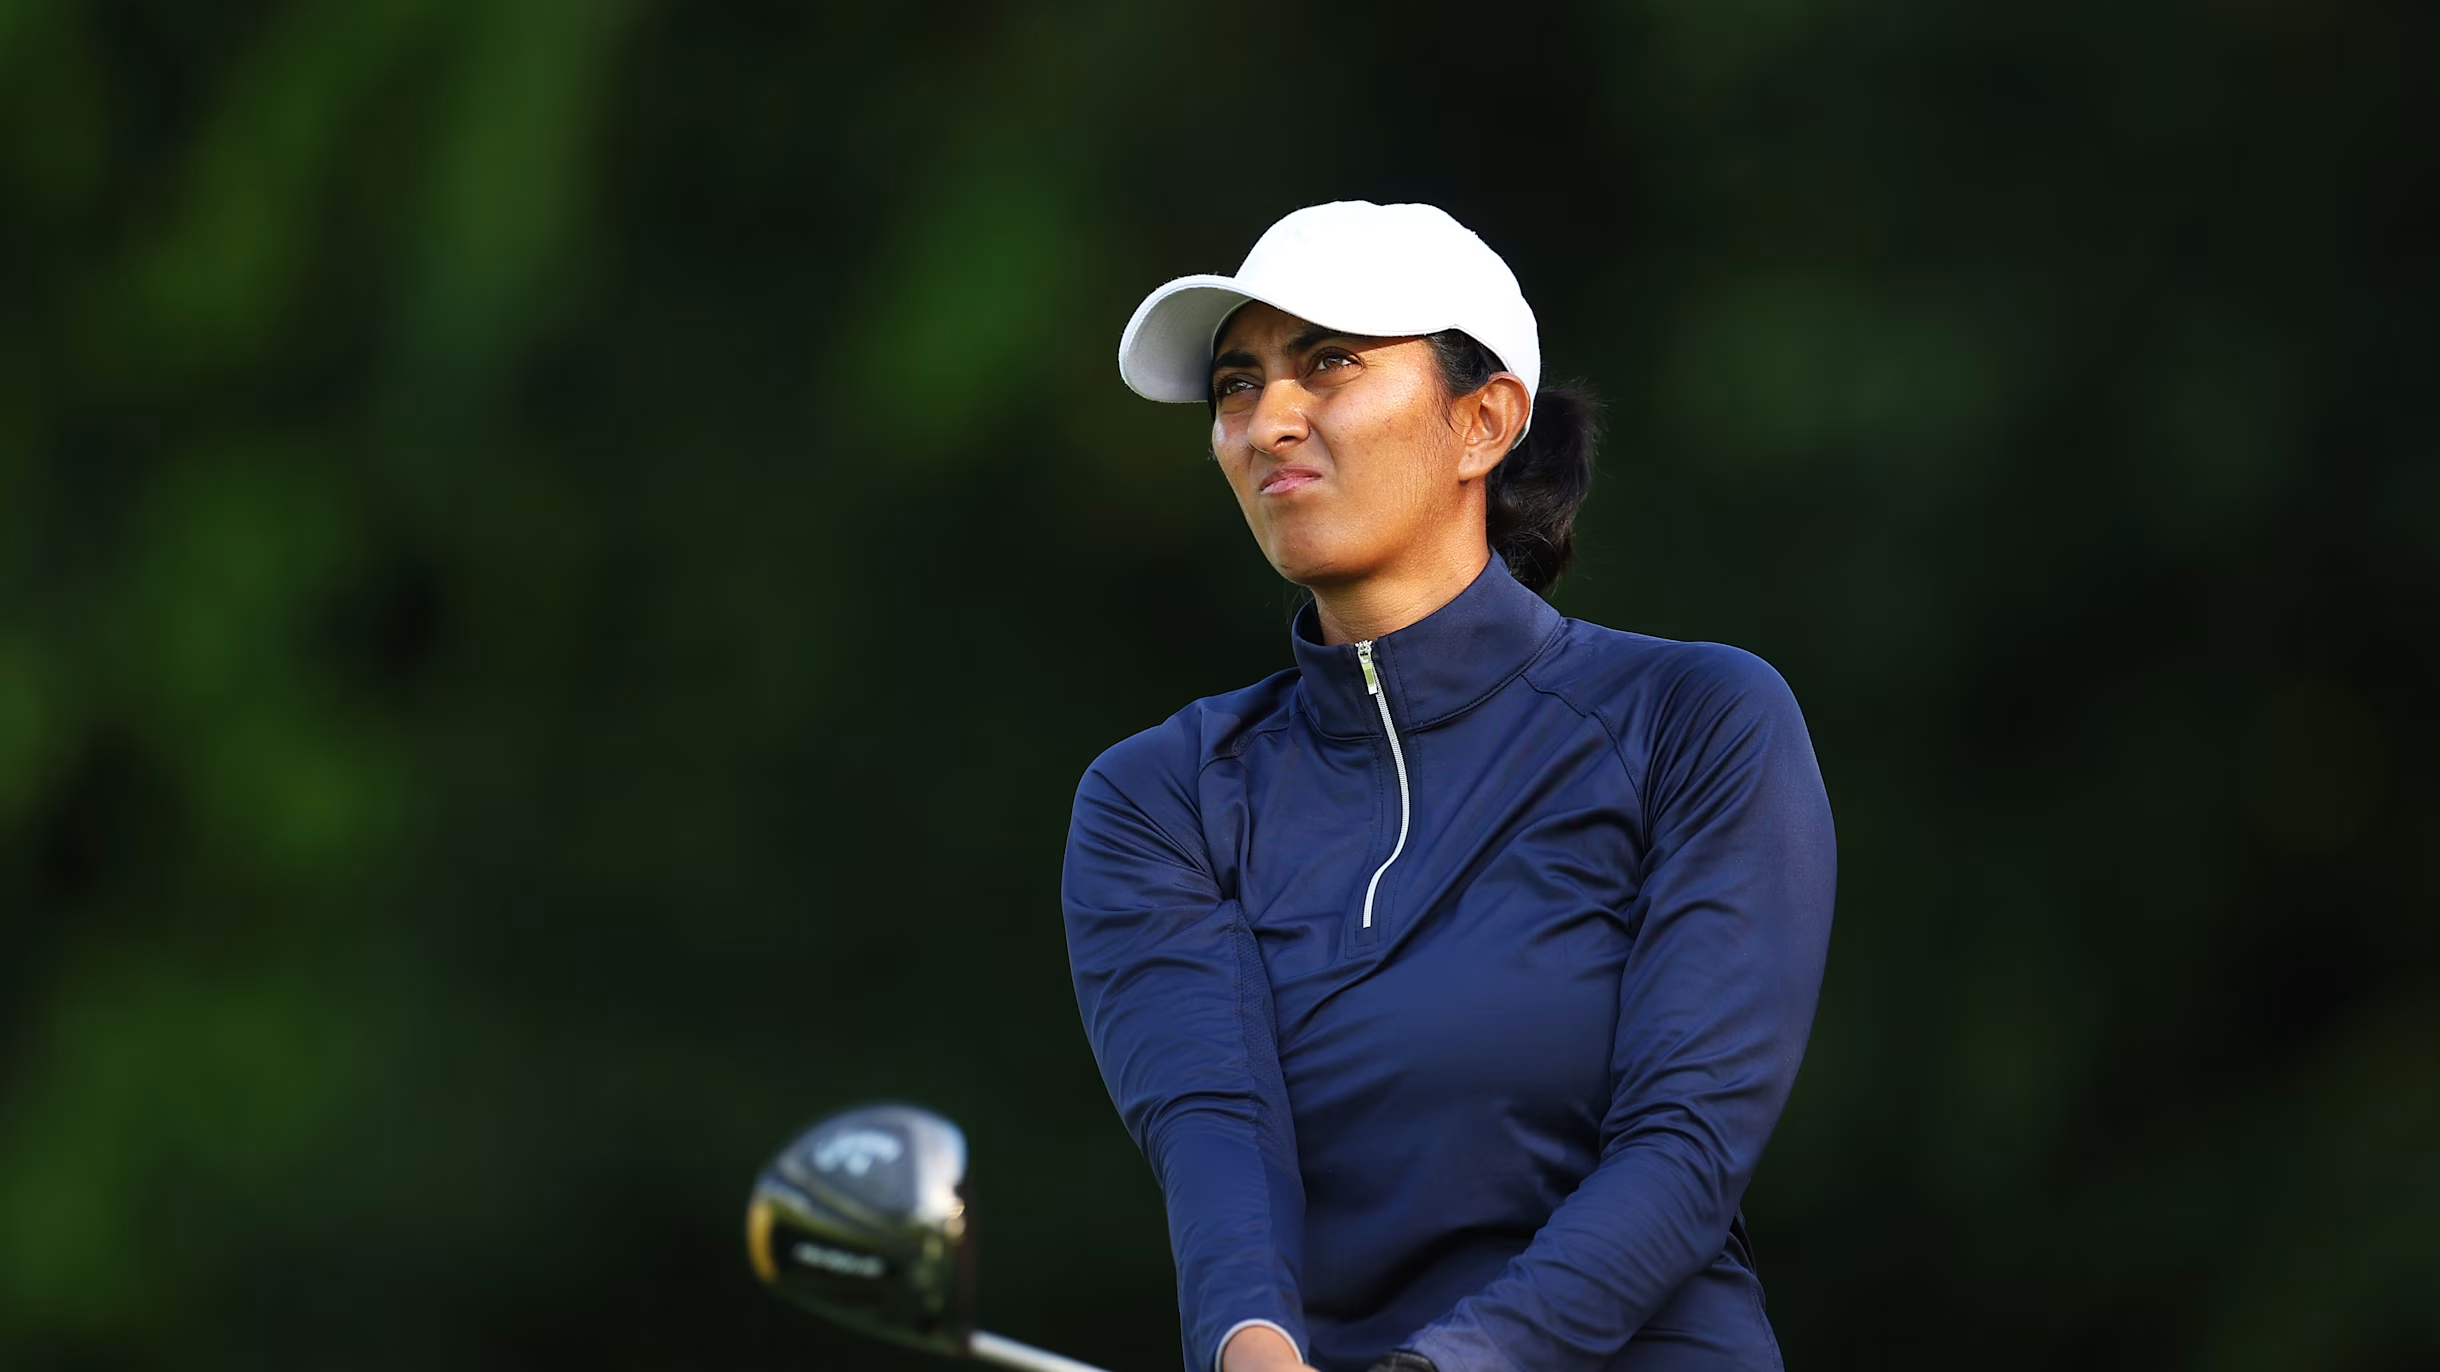 Aditi Ashok 20वें साल में है और भारत में गोल्फ के लिए तैयारी जारी